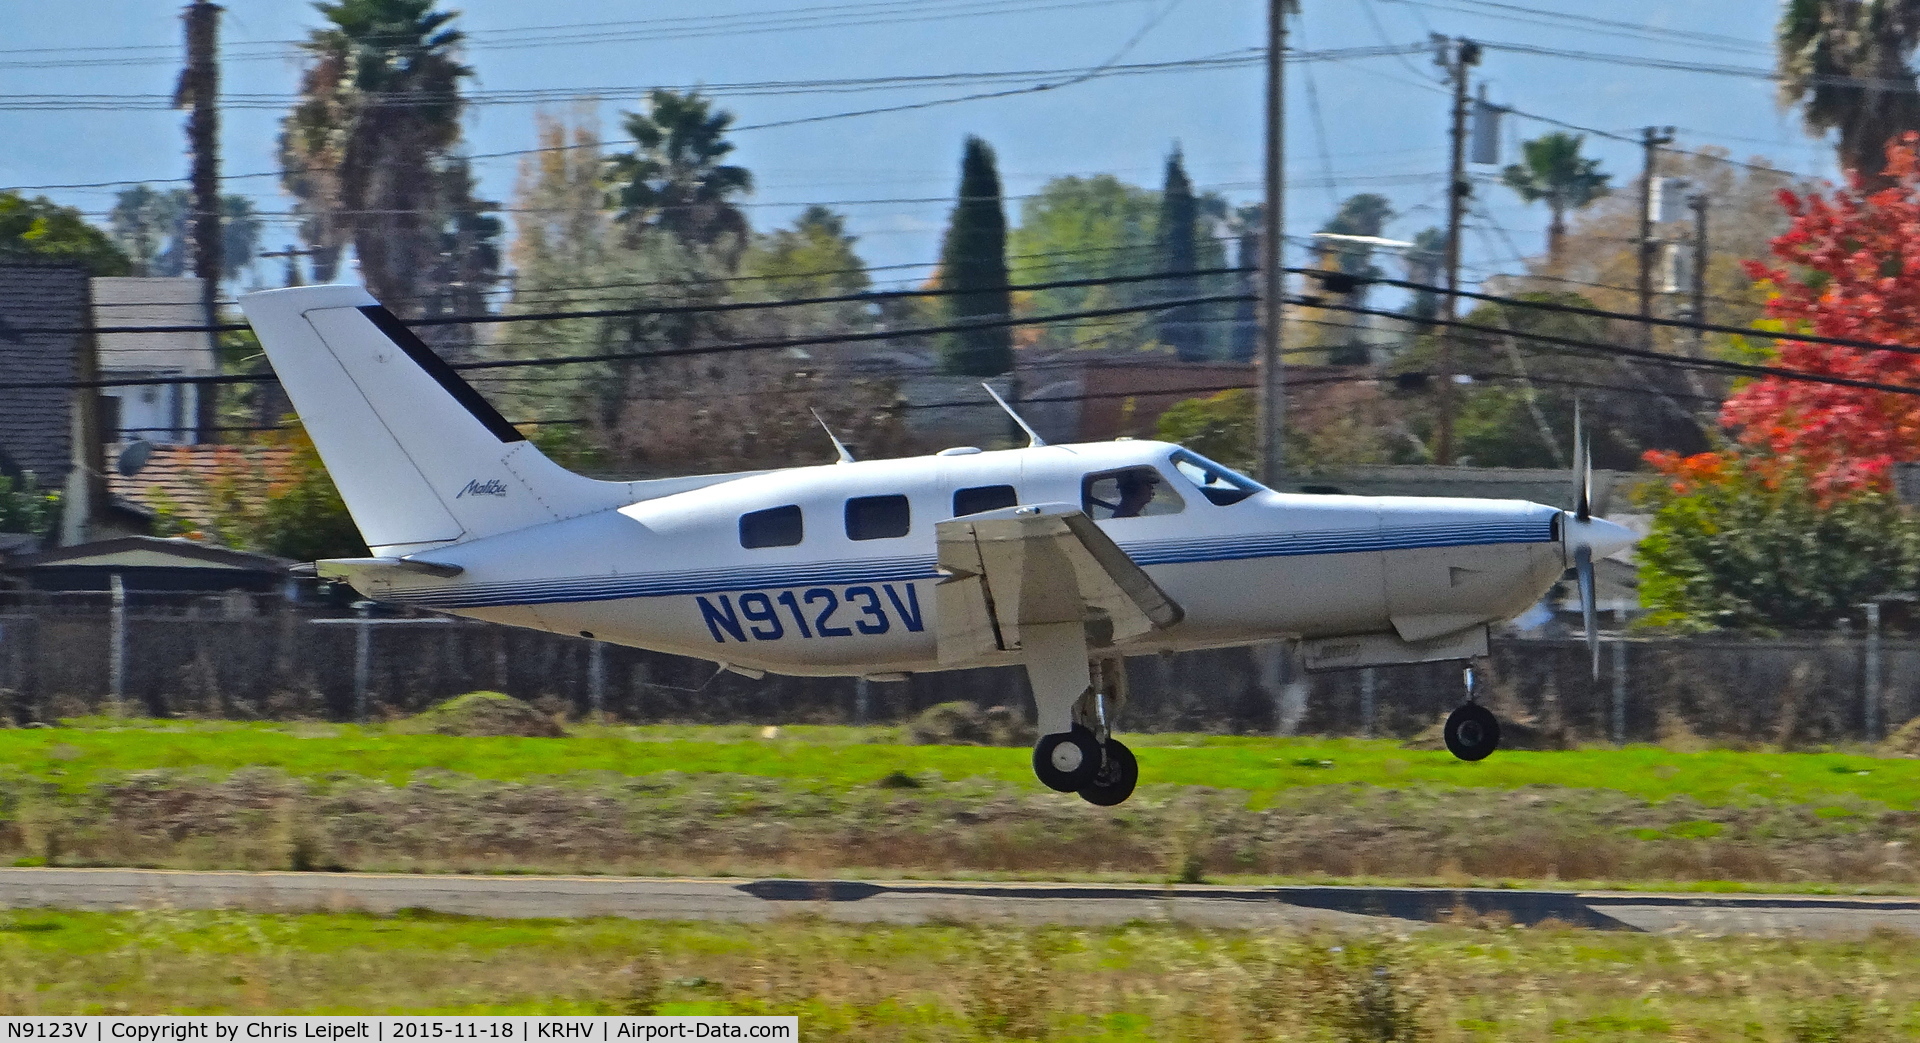 N9123V, 1987 Piper PA-46-310P Malibu C/N 4608060, California-based 1987 Piper Malibu departing runway 31L at Reid Hillview Airport, San Jose, CA.